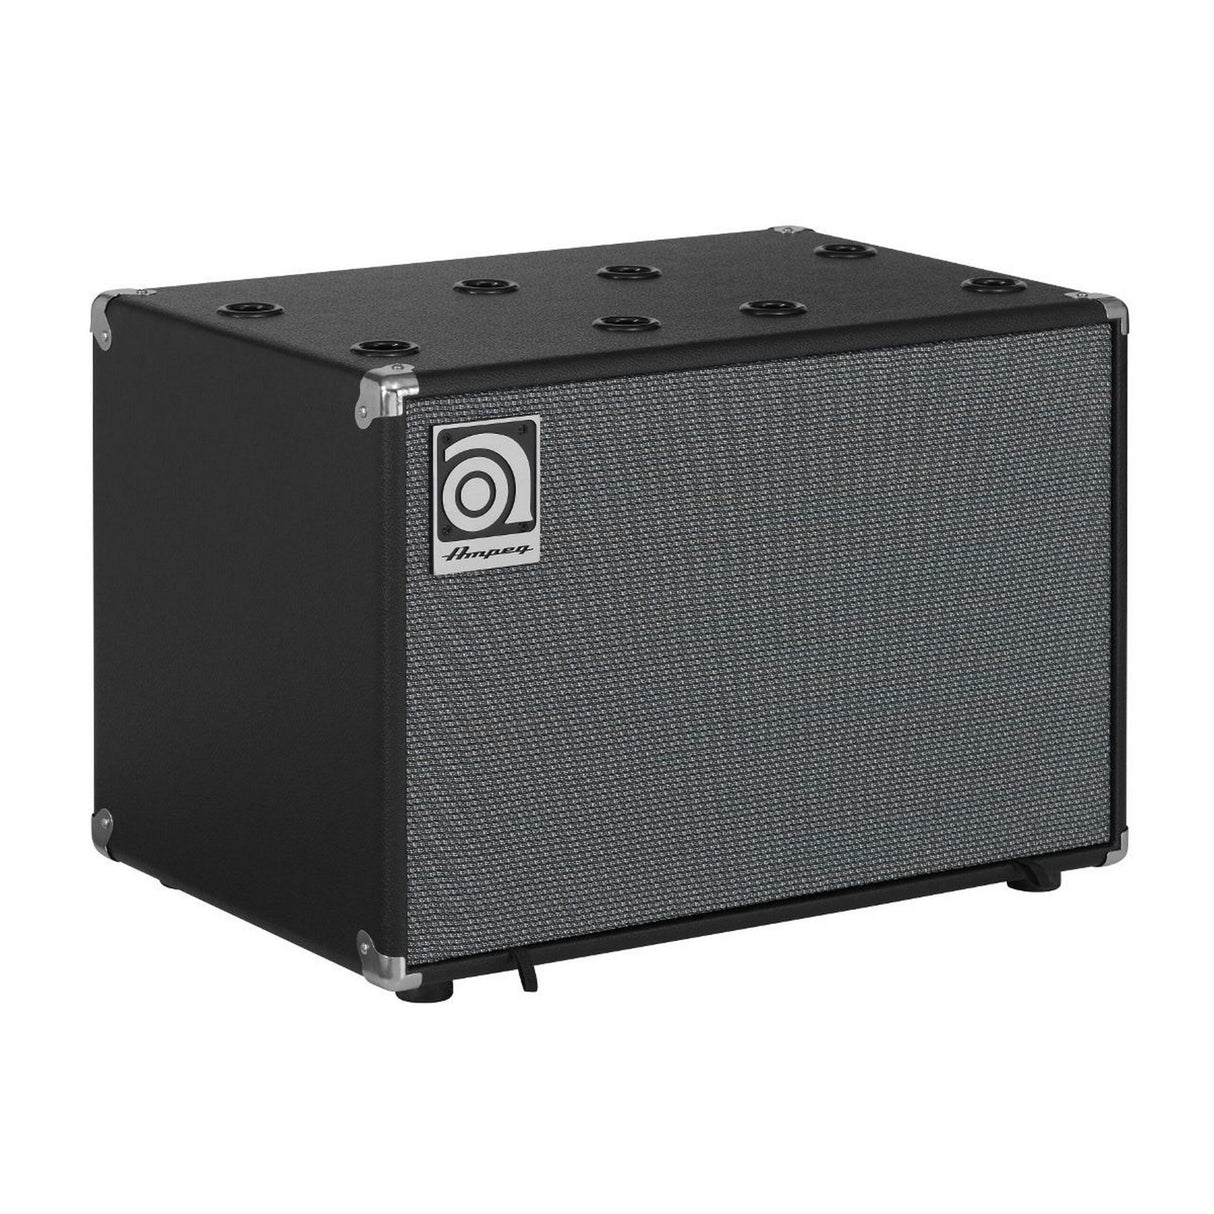 Ampeg SVT-112AV 12 Inch Bass Amp Cabinet